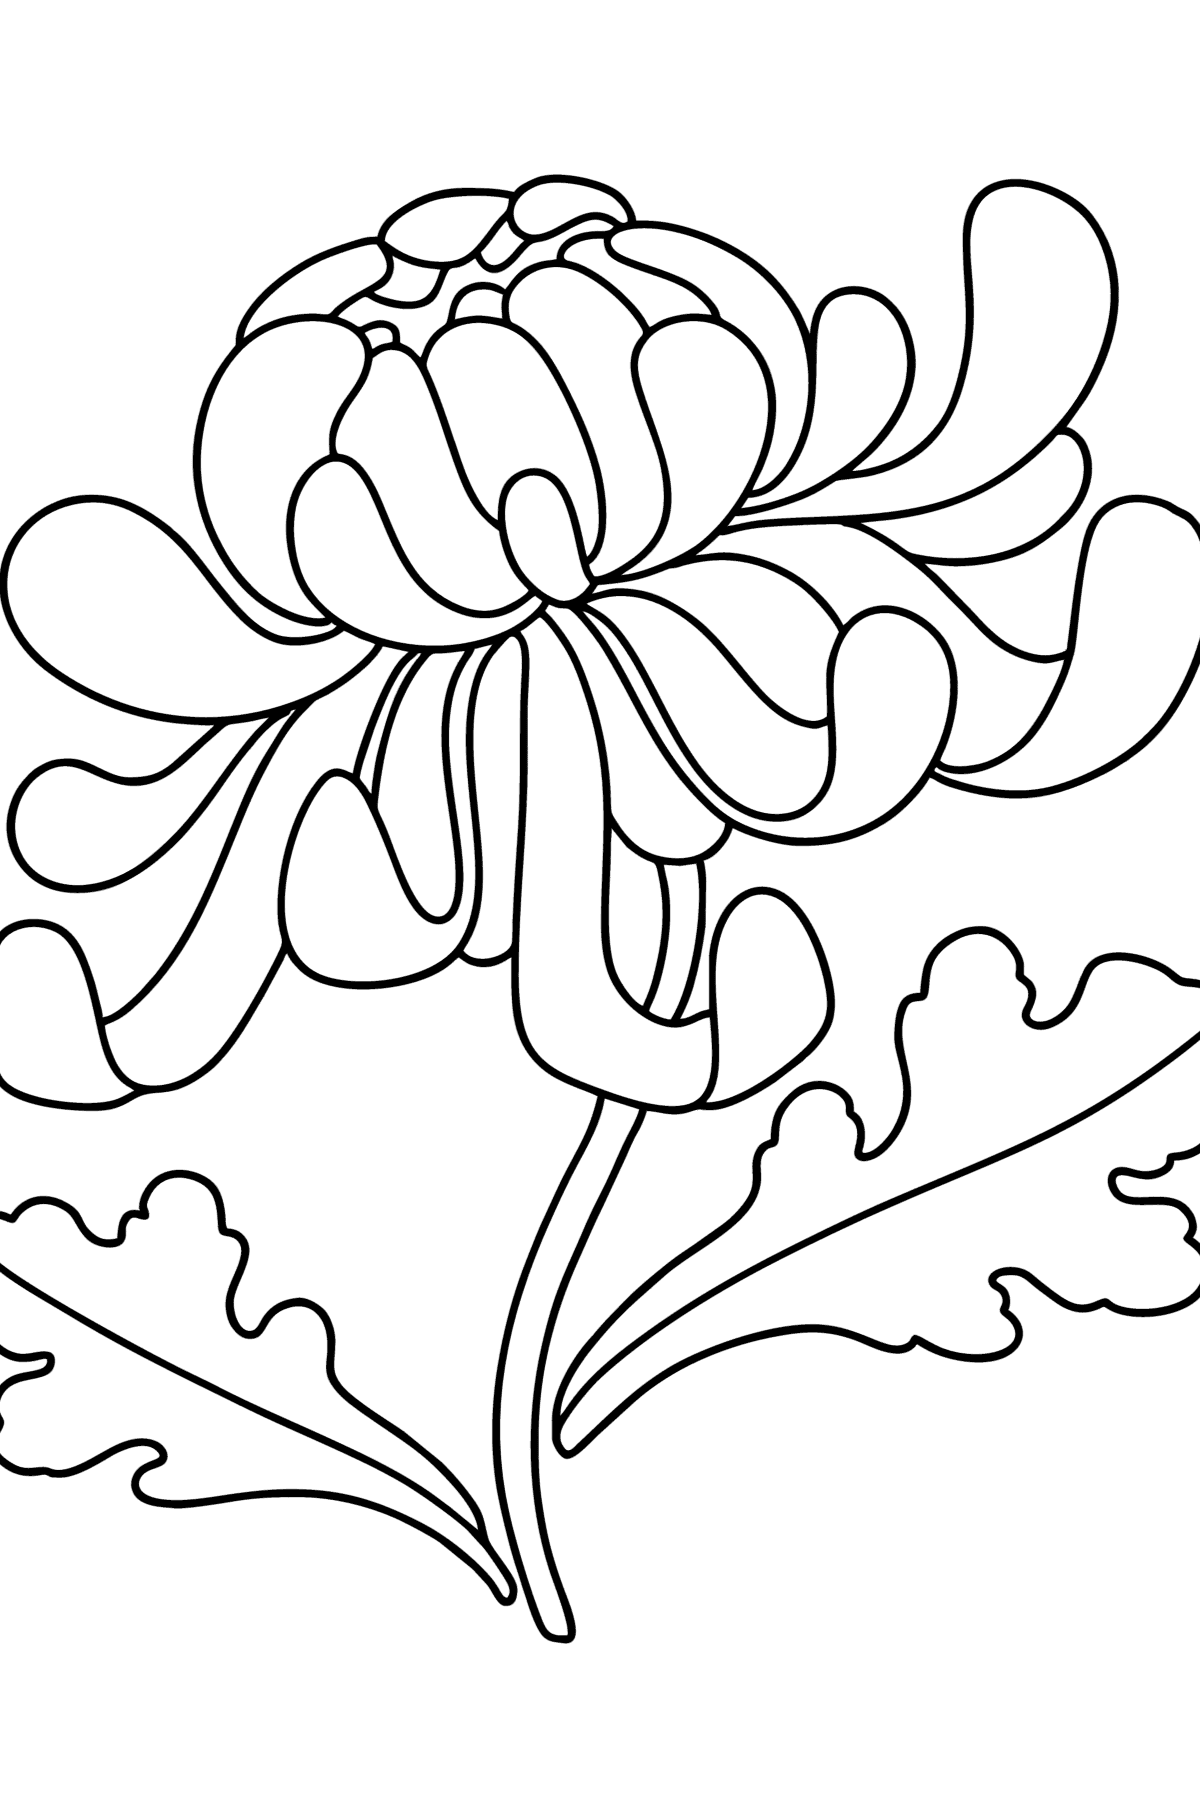 Раскраска Хризантемы - Картинки для Детей